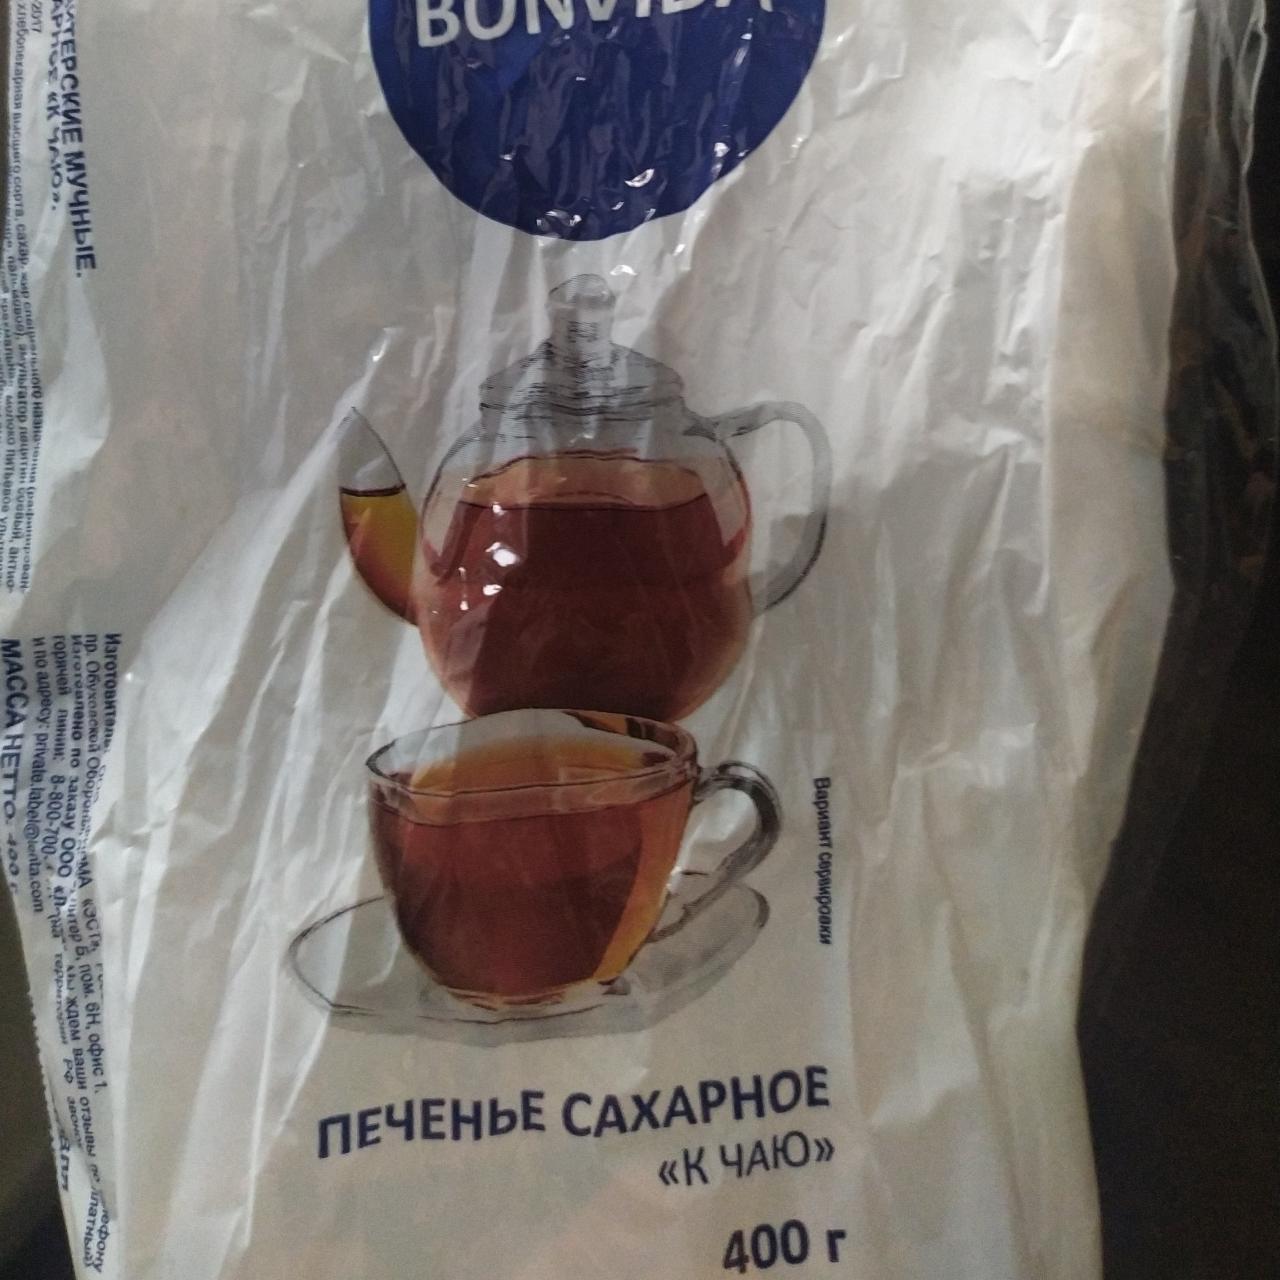 Фото - печенье сахарное к чаю Bonvida